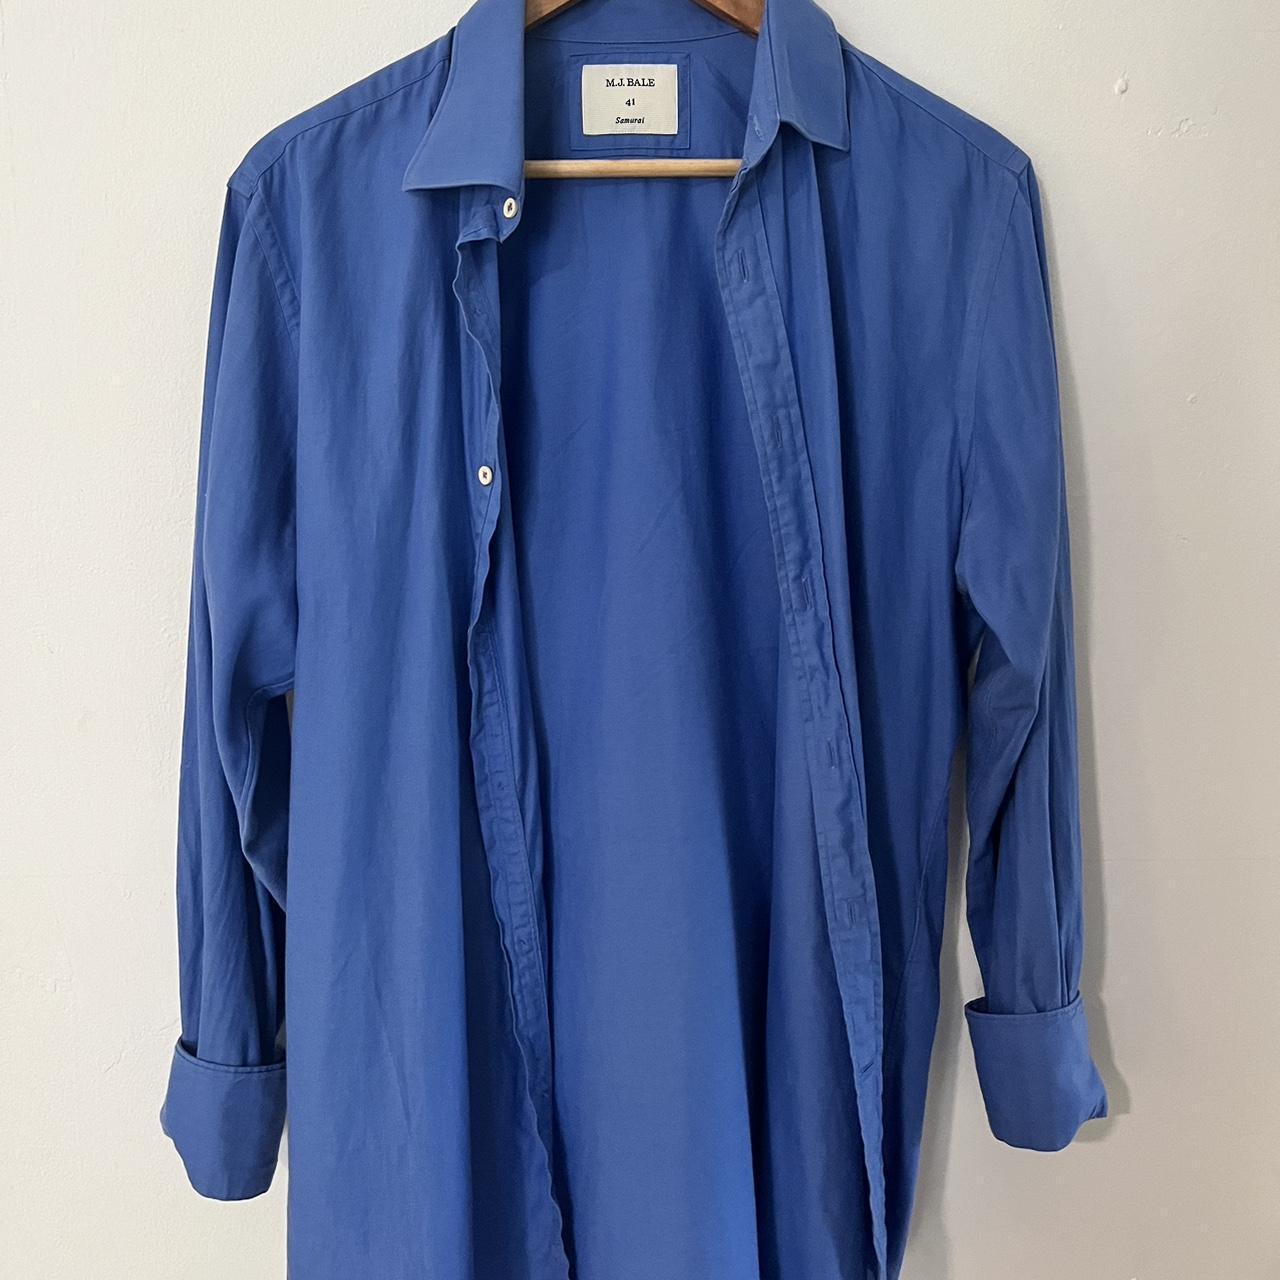 Blue collar overshirt 🦋soft material... - Depop